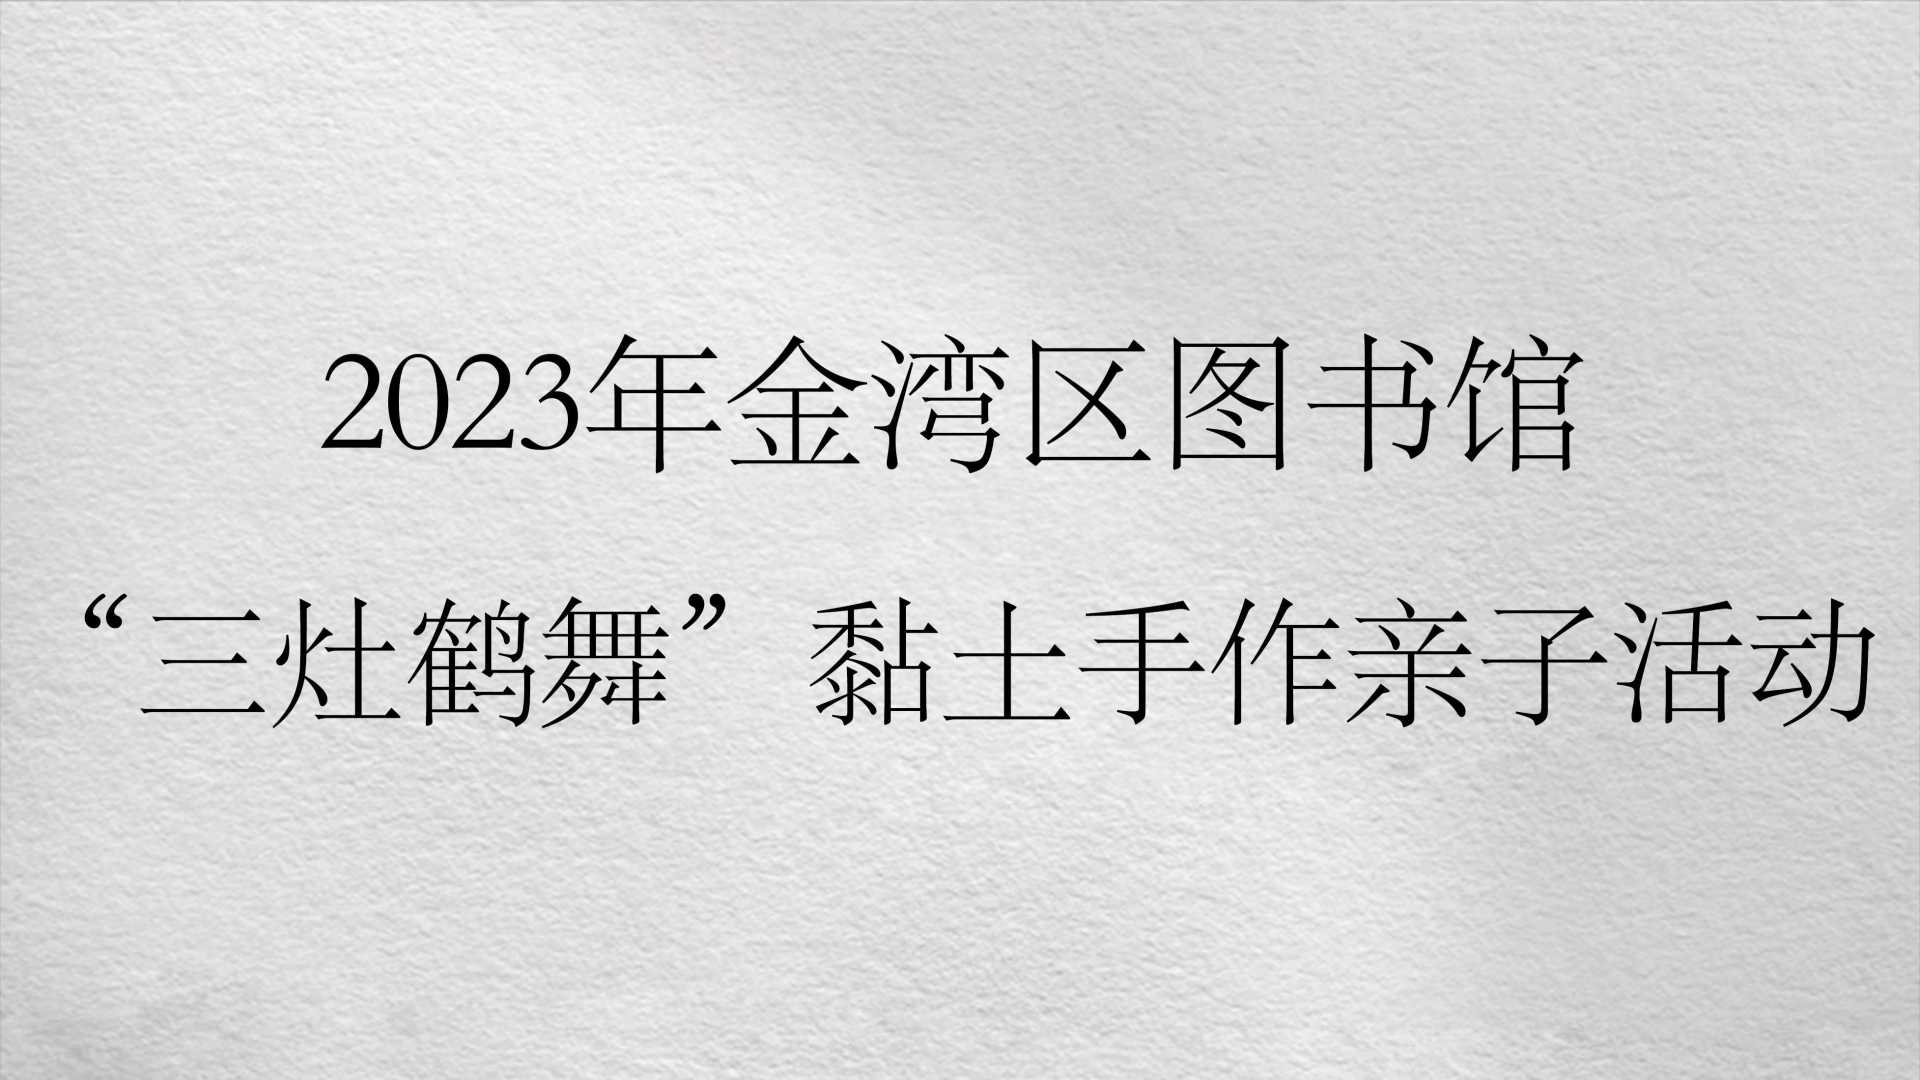 2023年金湾区图书馆 “三灶鹤舞”黏土手作亲子活动